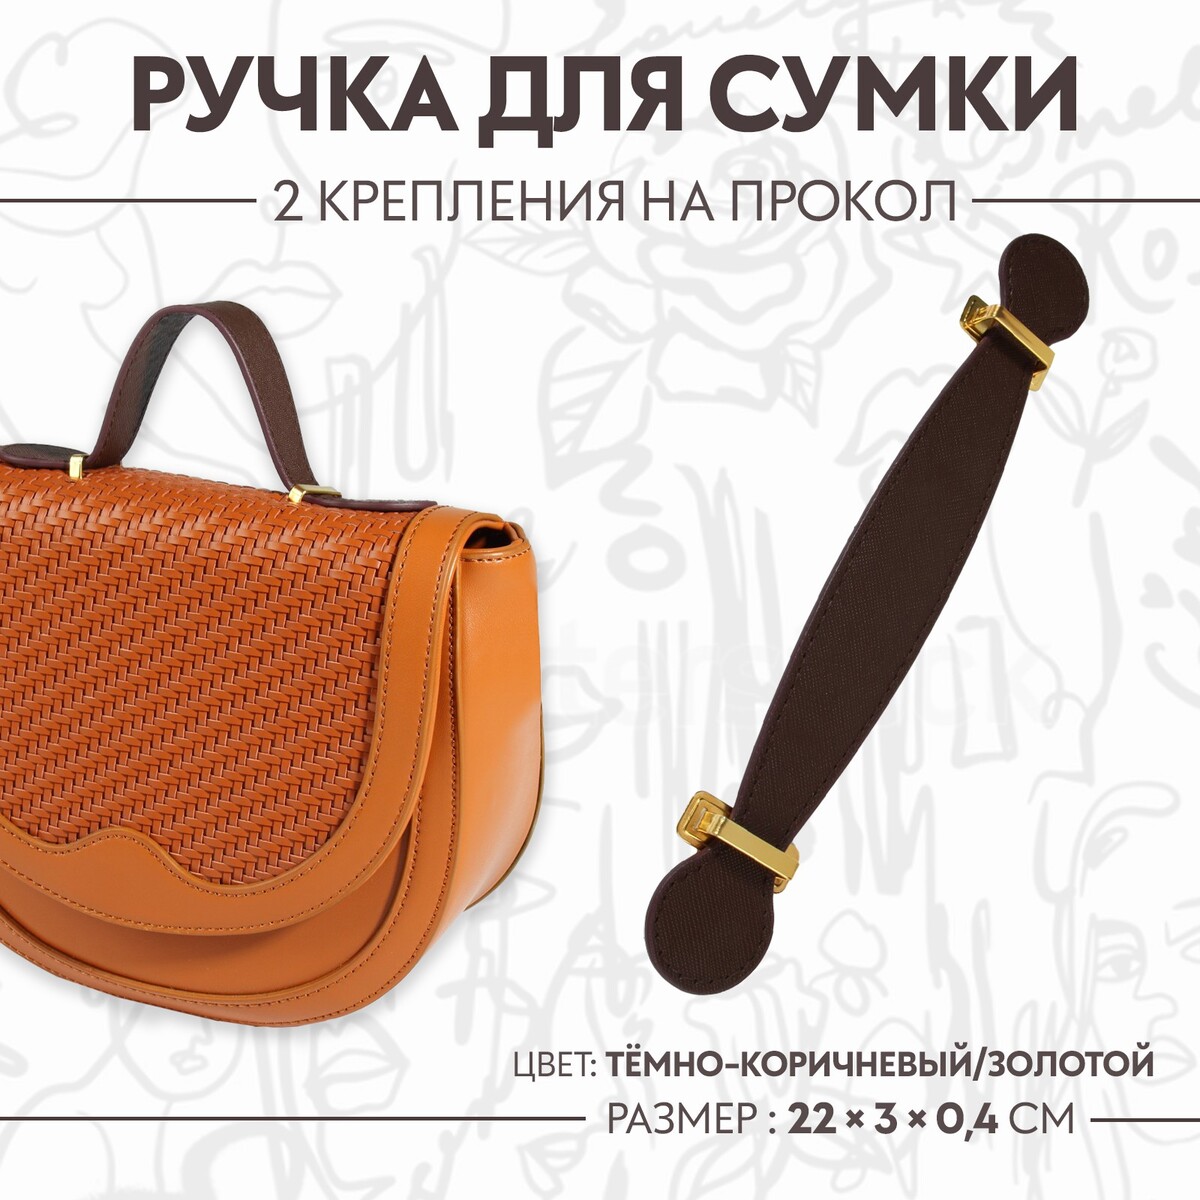 Ручка для сумки, 2 крепления на прокол, 22 × 3 × 0,4 см, цвет темно-коричневый/золотой